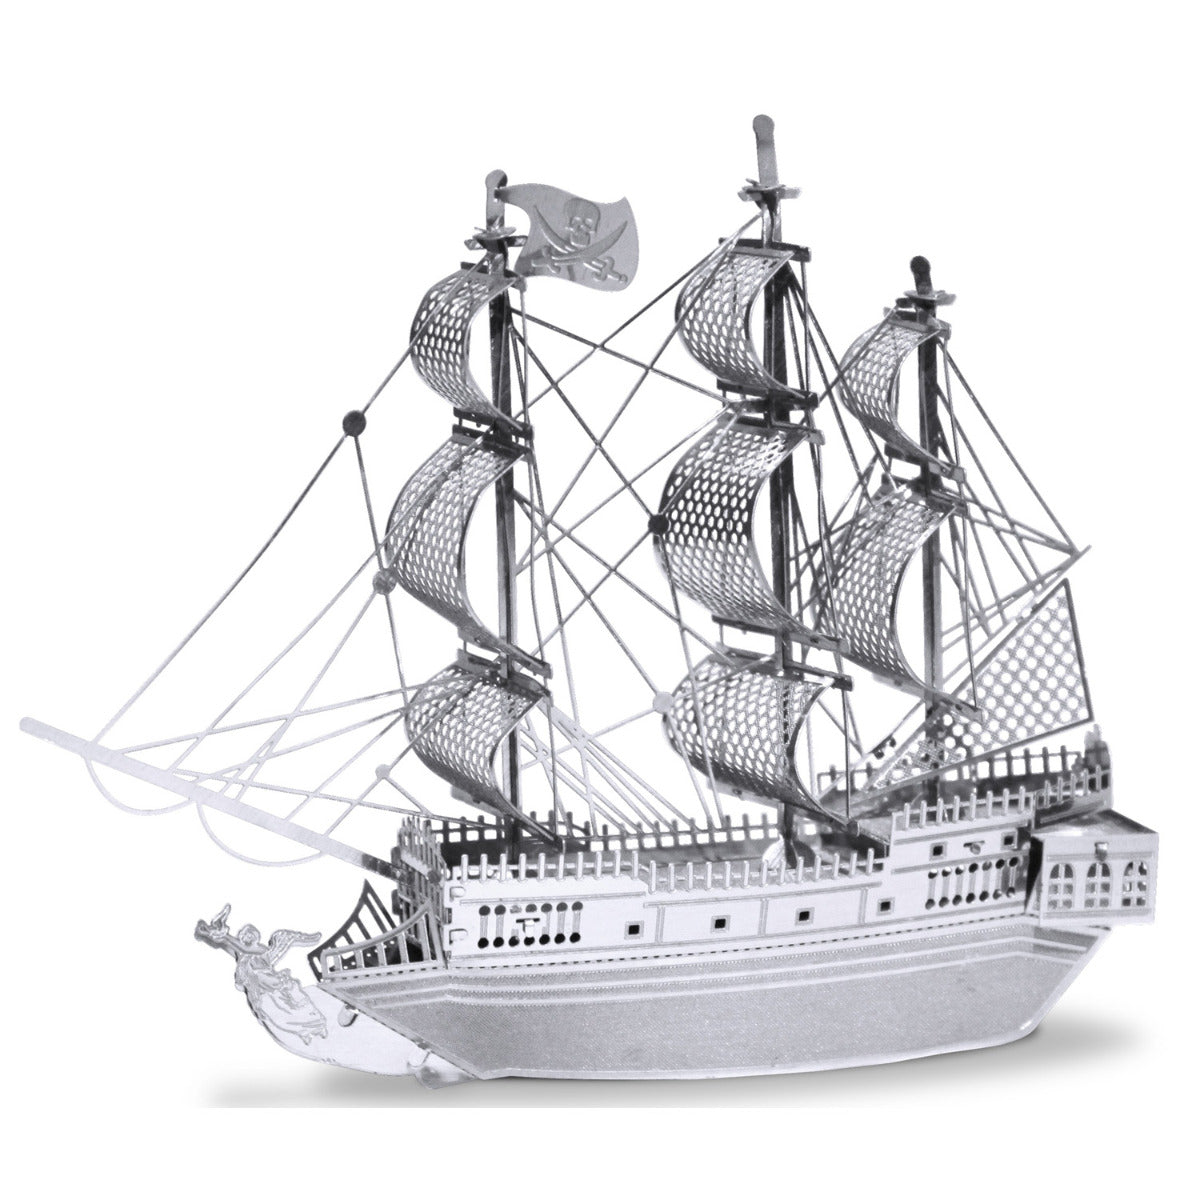 Metal Earth Metallbausätze MMS012 Black Pearl Piratenschiff Metall Modell